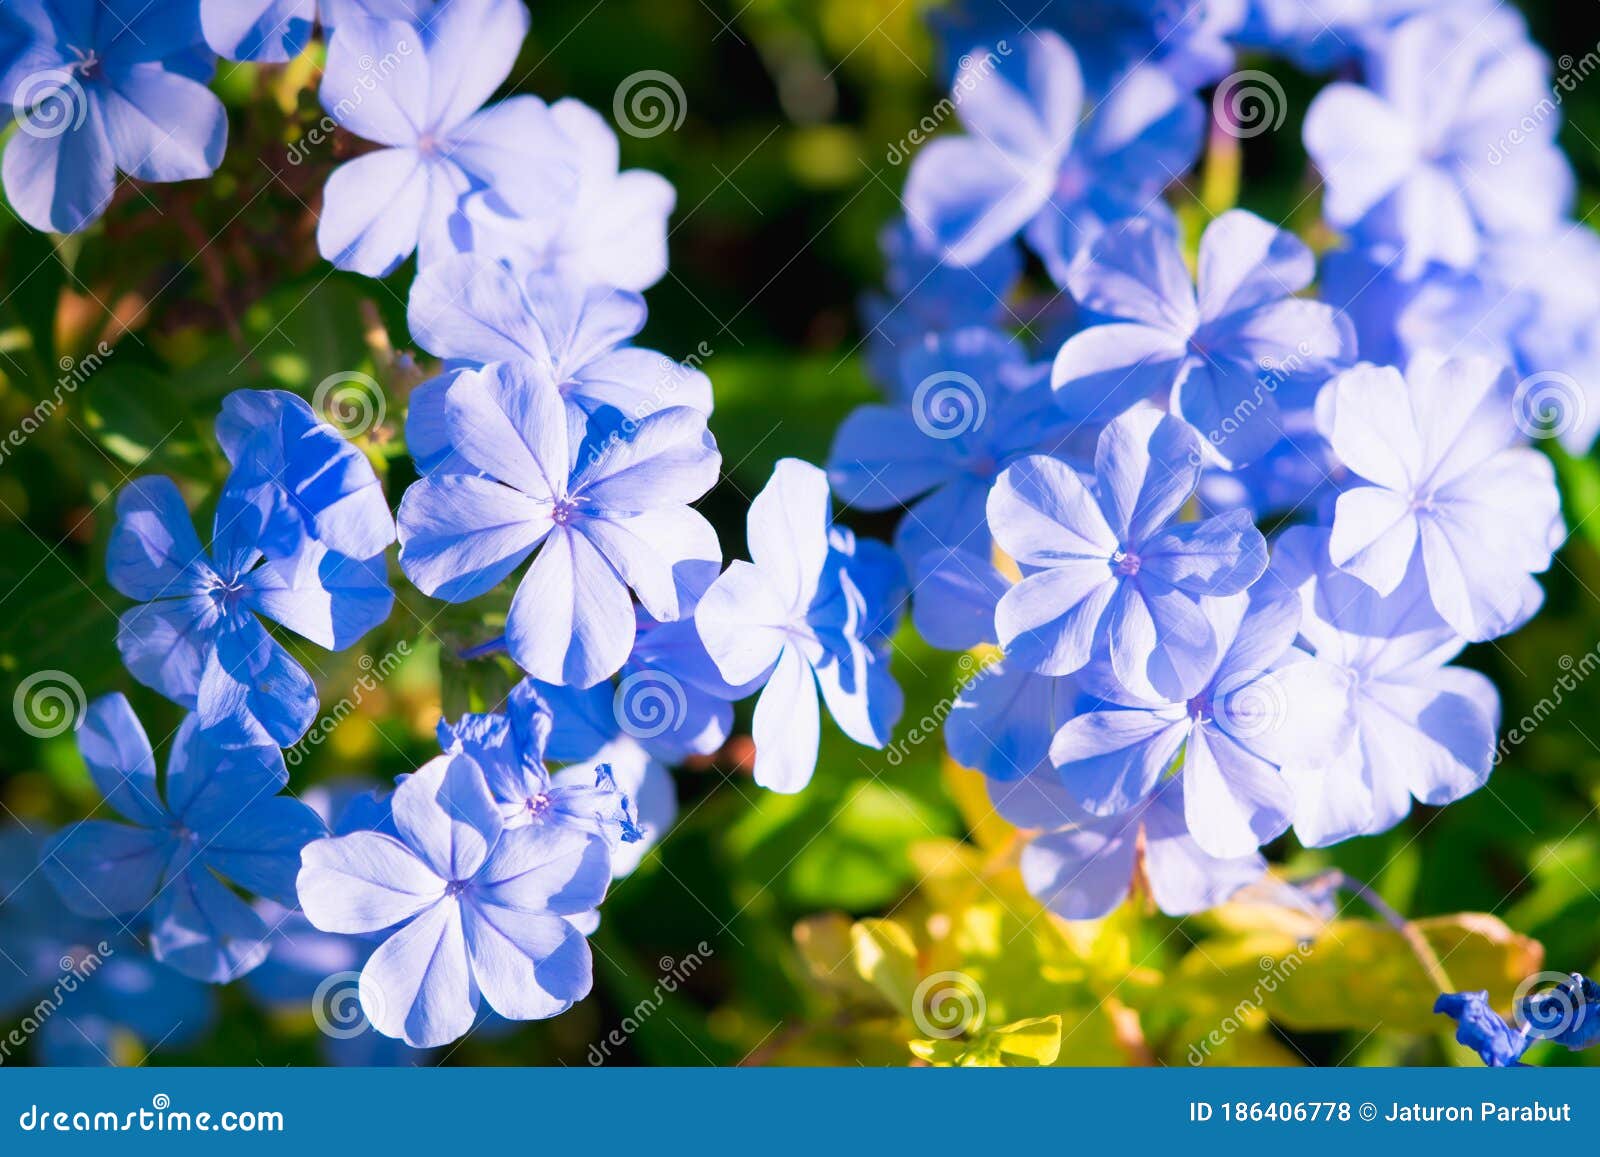 https://thumbs.dreamstime.com/z/closeuse-nature-fleur-de-verveine-bleue-dans-le-jardin-bleu-verbena-en-utilisant-comme-fond-concept-186406778.jpg